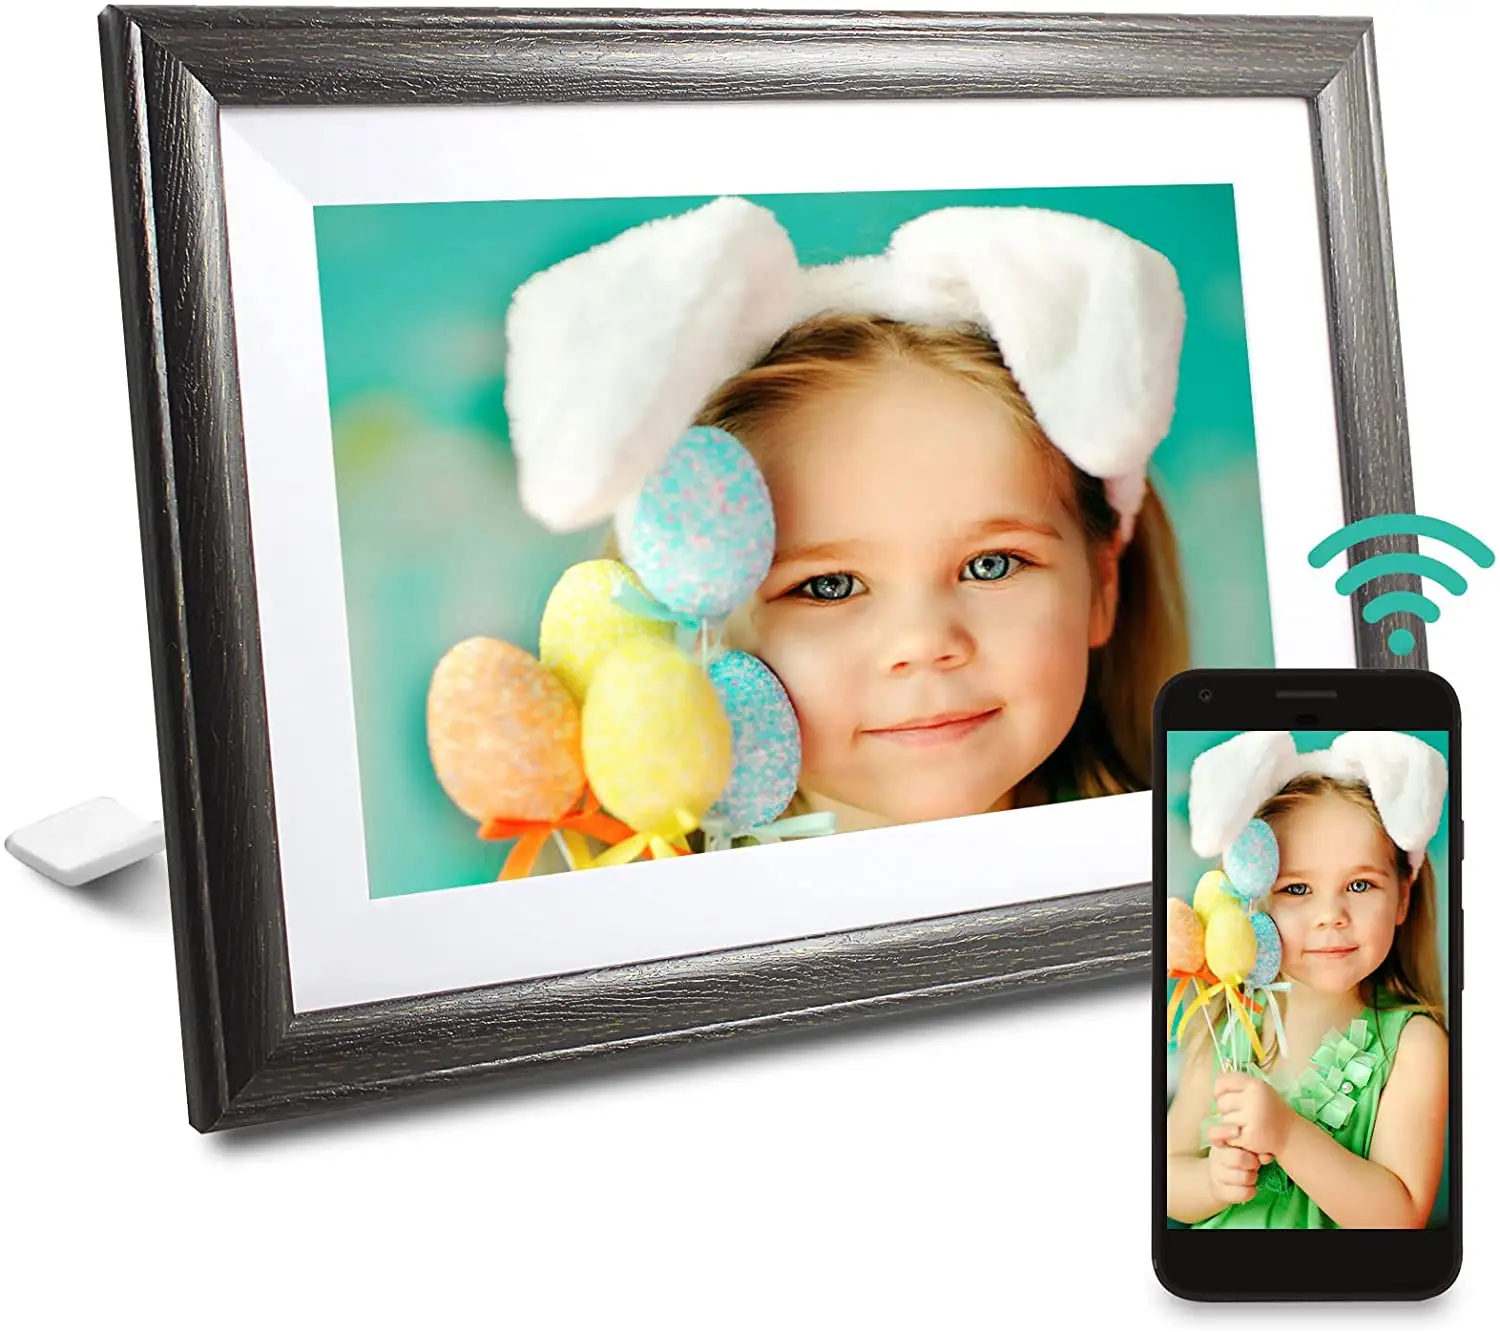 Cadre Photo numérique intelligent avec WiFi, 10 pouces, écran tactile, rotatif automatiquement, possibilité de utiliser avec l'application cadre Photo